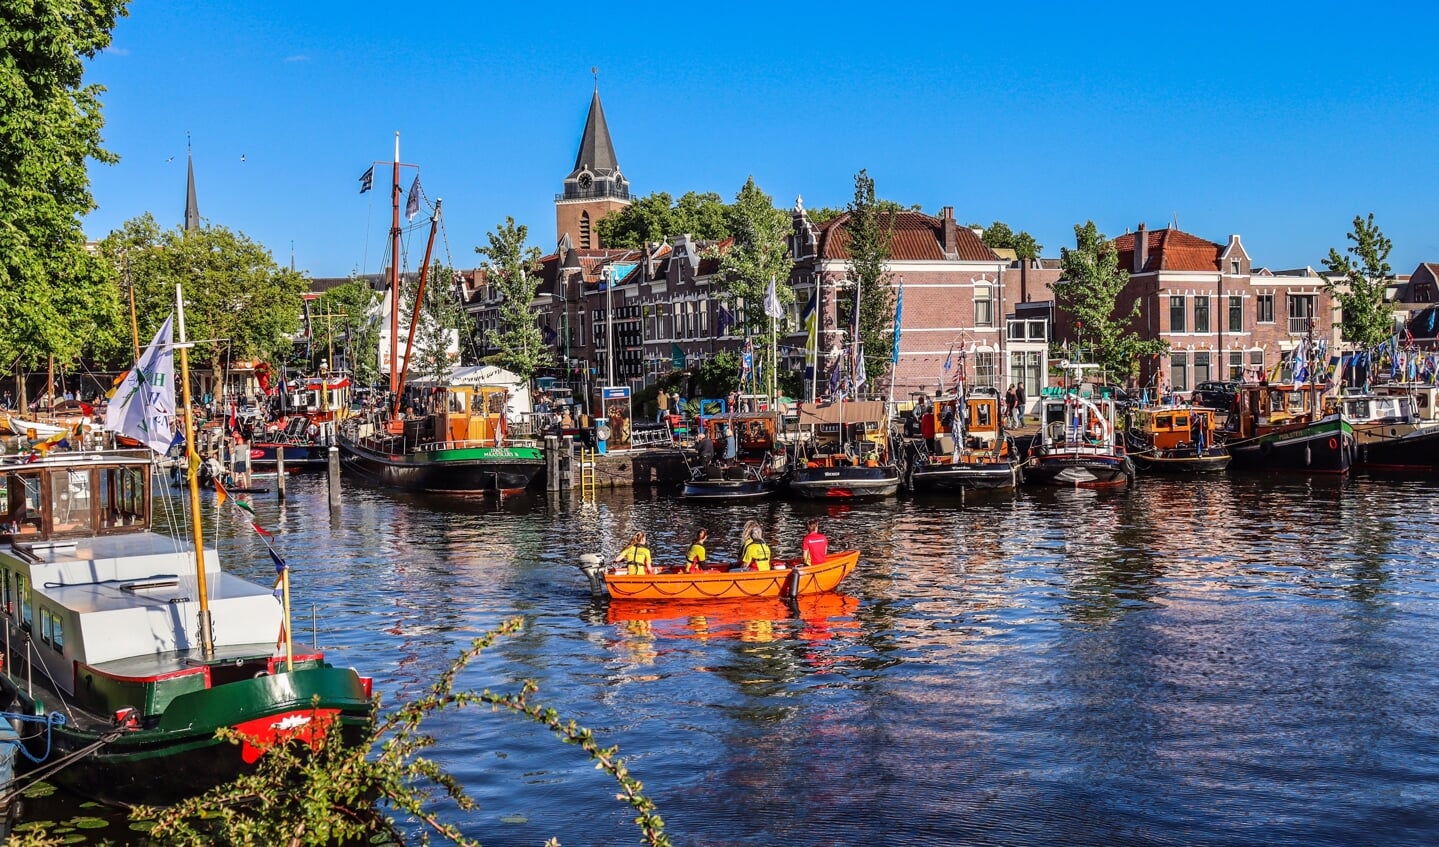 • De haven van Woerden lag op donderdag al snel vol met sleepbootjes en opduwers. 